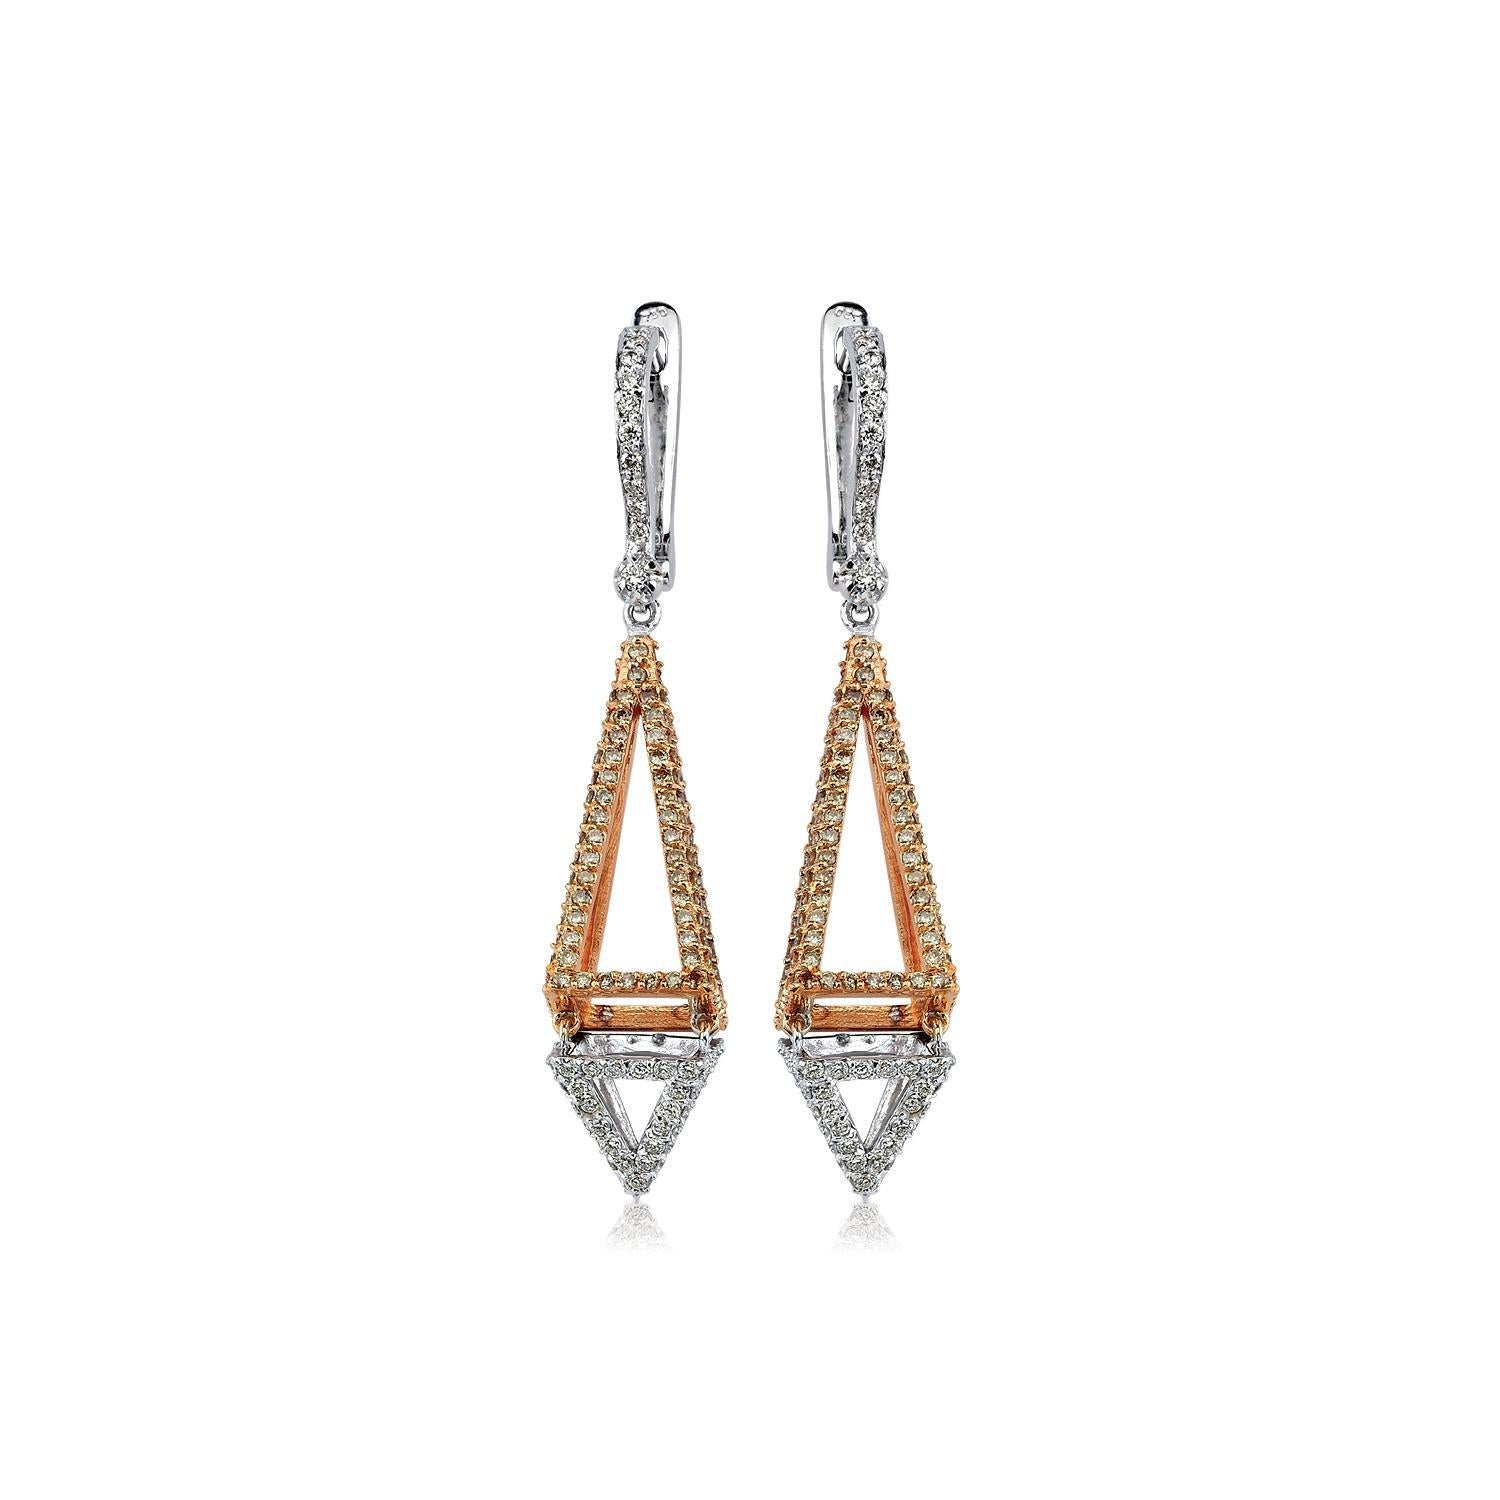 New Forms, d'Emre Osmanlar, est une exploration sophistiquée de la géométrie à travers les bijoux.
Les formes classiques cèdent la place à de nouvelles, tandis que les courbes, les liens et les pivots émergent en ajoutant des dimensions